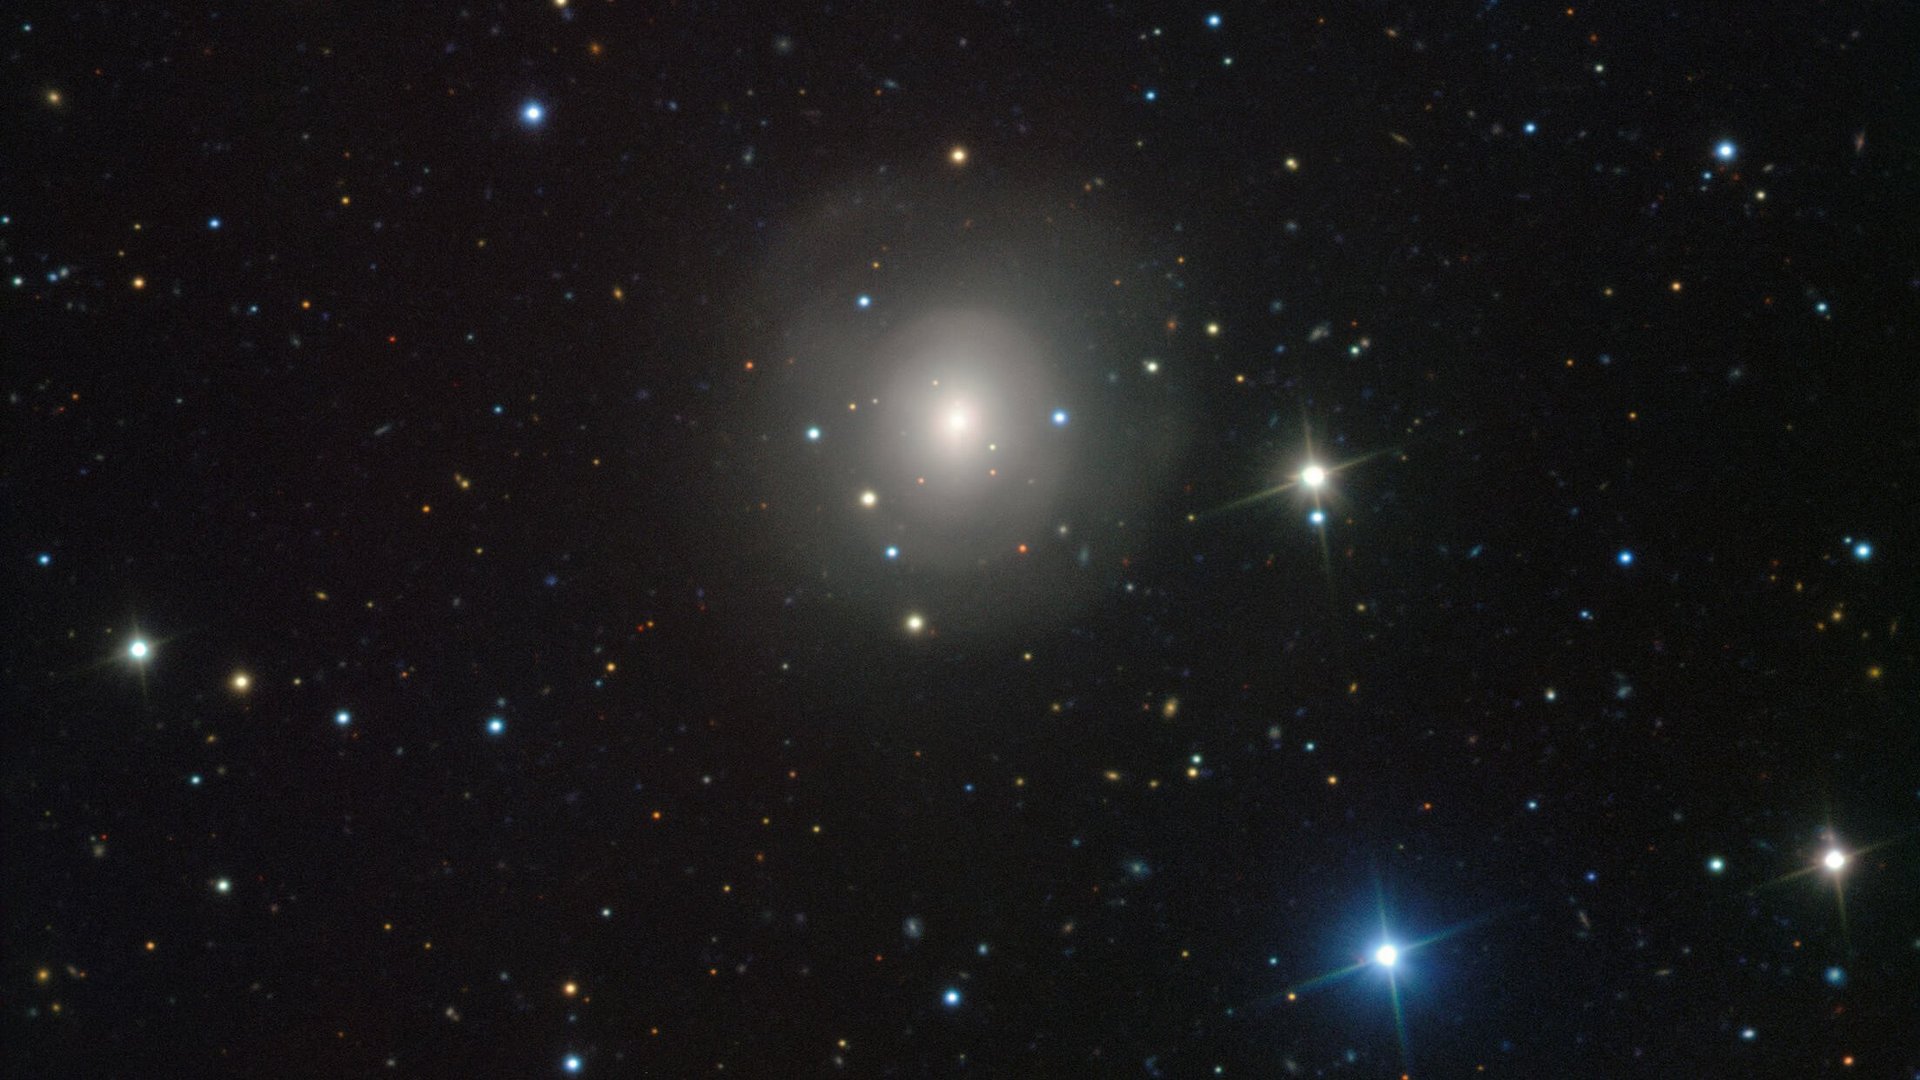 Die elliptische Galaxie NGC 4993, etwa 130 Millionen Lichtjahre von der Erde entfernt, aufgenommen mit dem VIMOS-Instrument auf dem Very Large Telescope der Europäischen Südsternwarte in Chile.